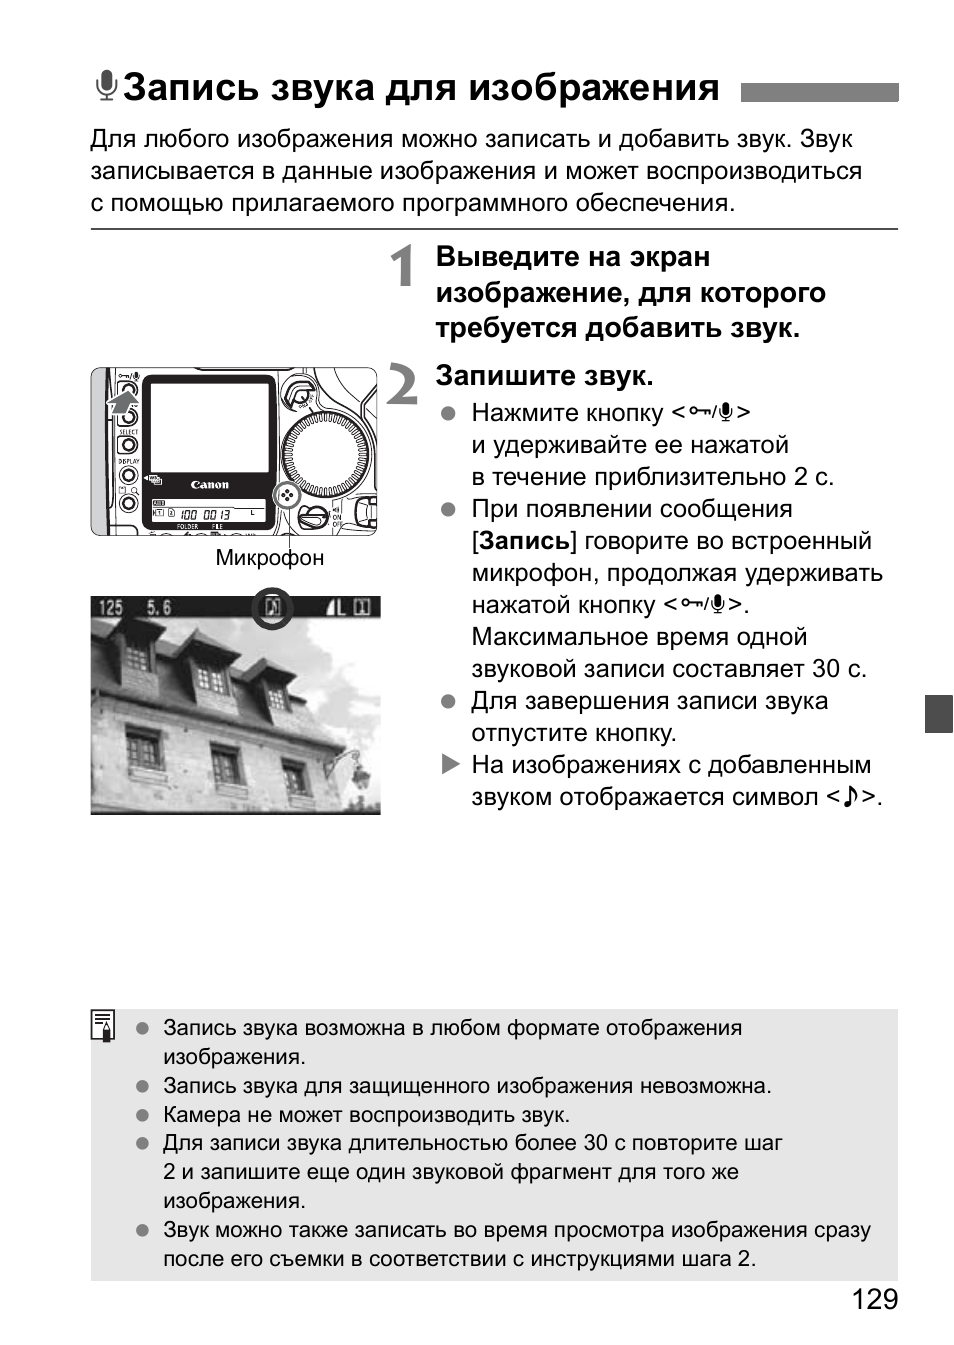 Запись звука для изображения, Kзапись звука для изображения | Инструкция по эксплуатации Canon EOS 1D Mark II N | Страница 129 / 196